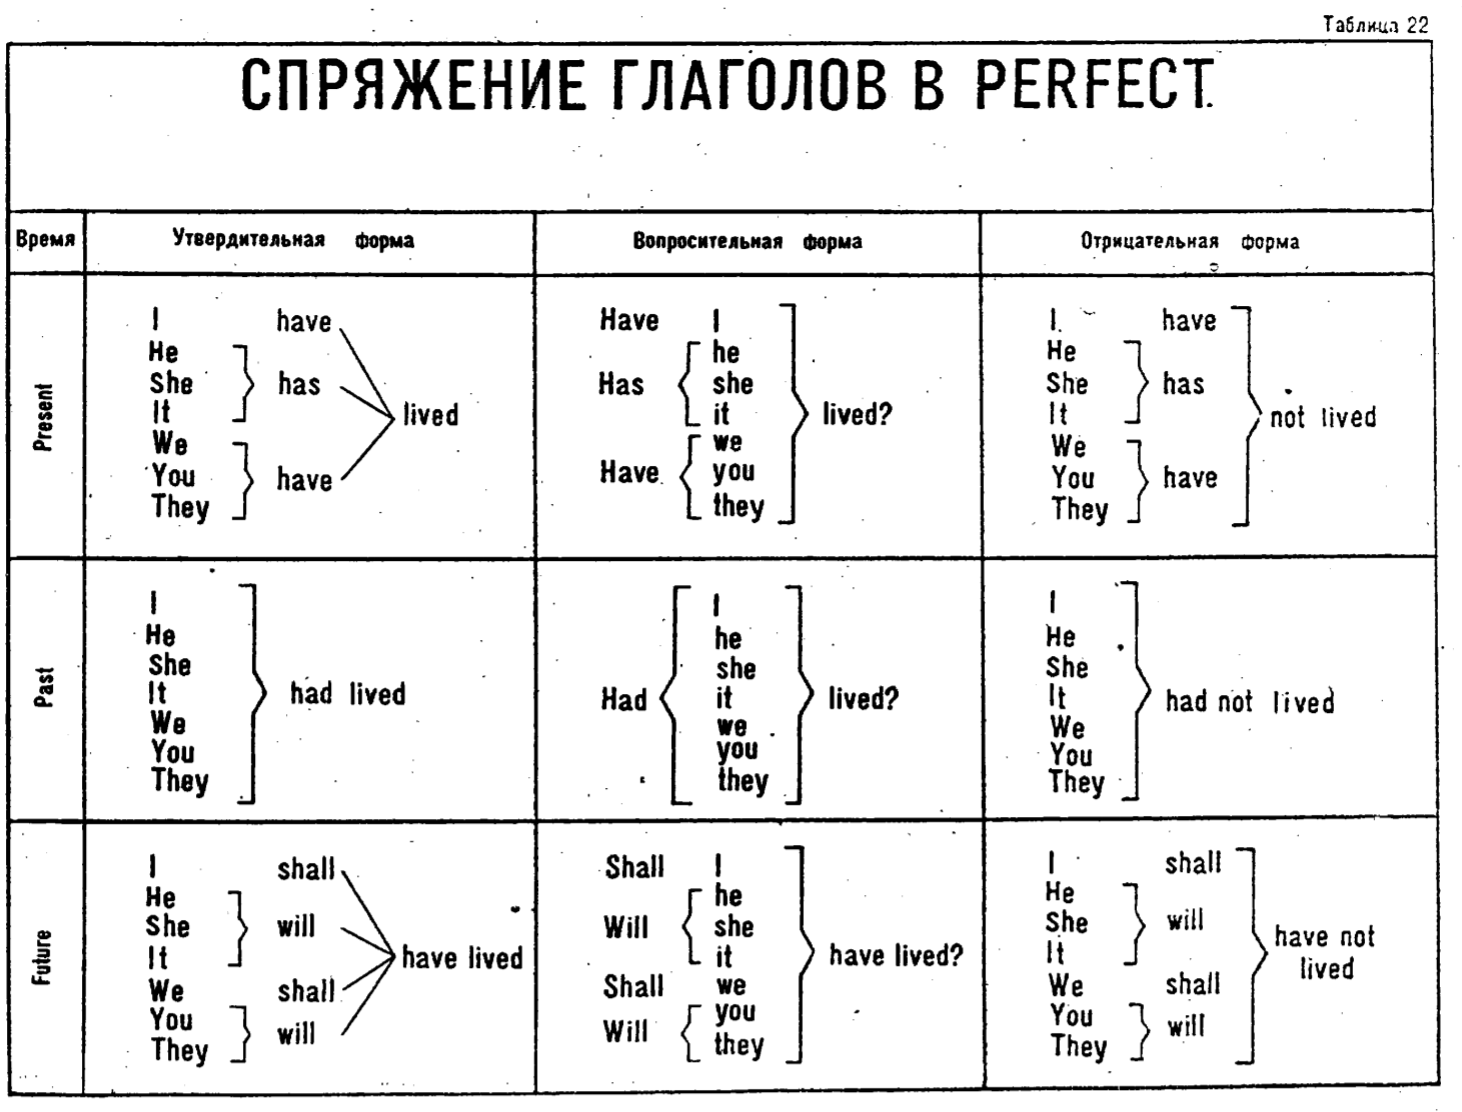 Грамматические времена в русском языке